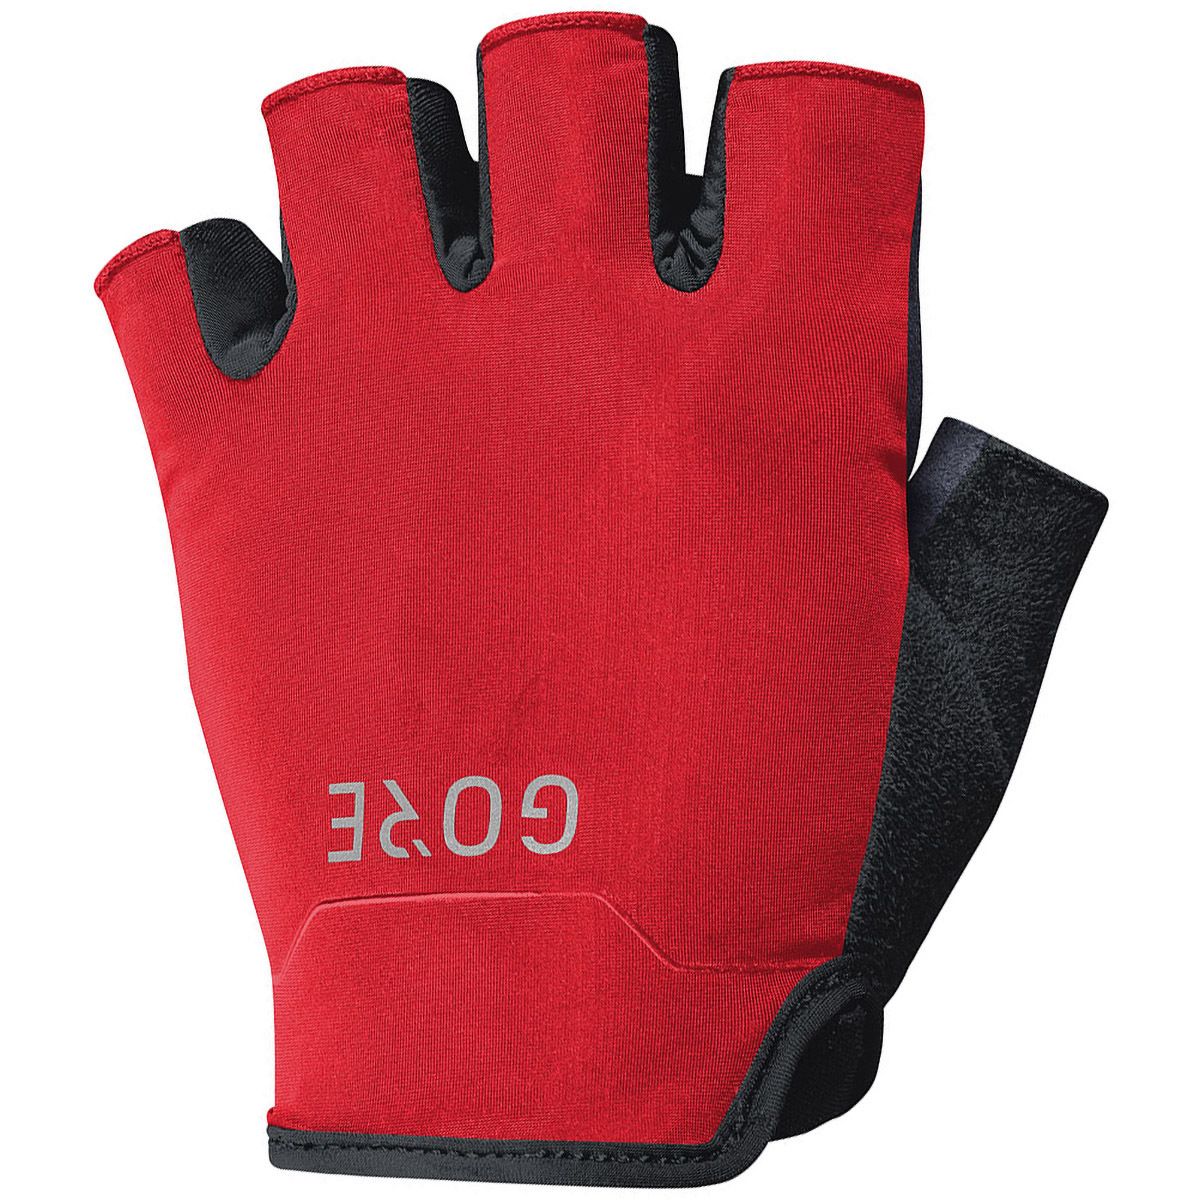 GORE WEAR C3 Short Finger Urban Gloves black 2019 Bike Gloves 